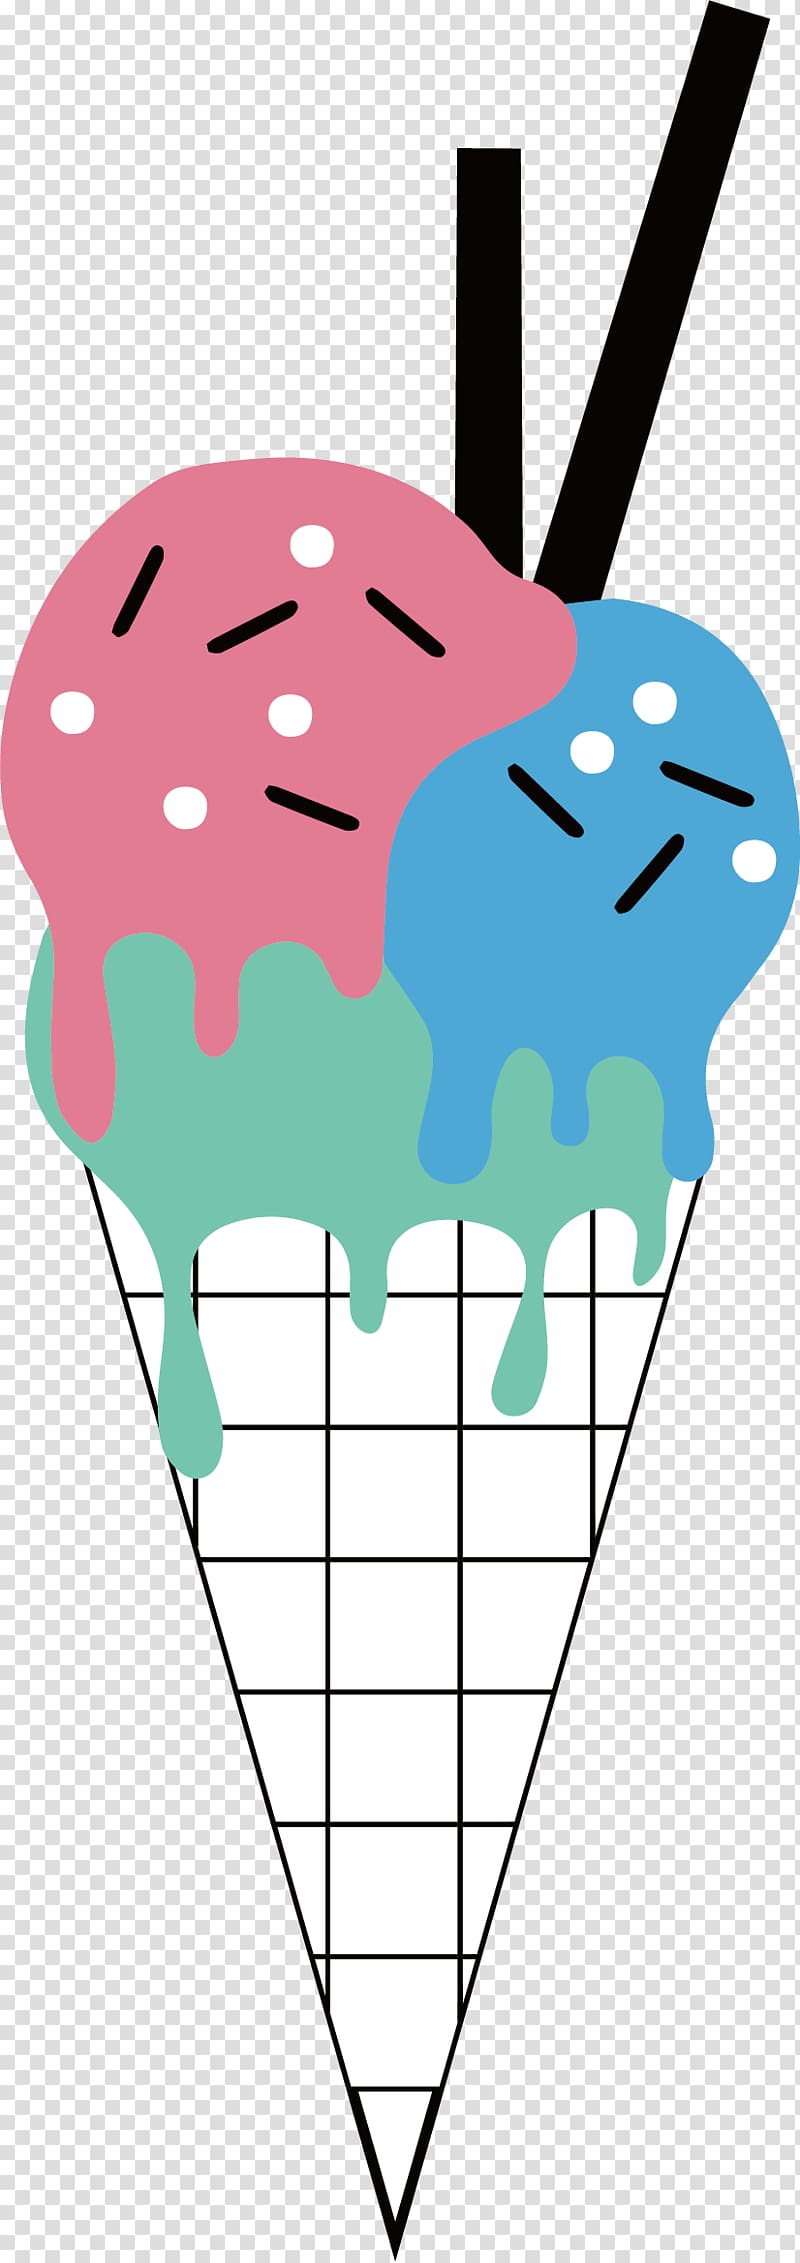 Ice cream Milk , Cartoon ice cream transparent background PNG clipart